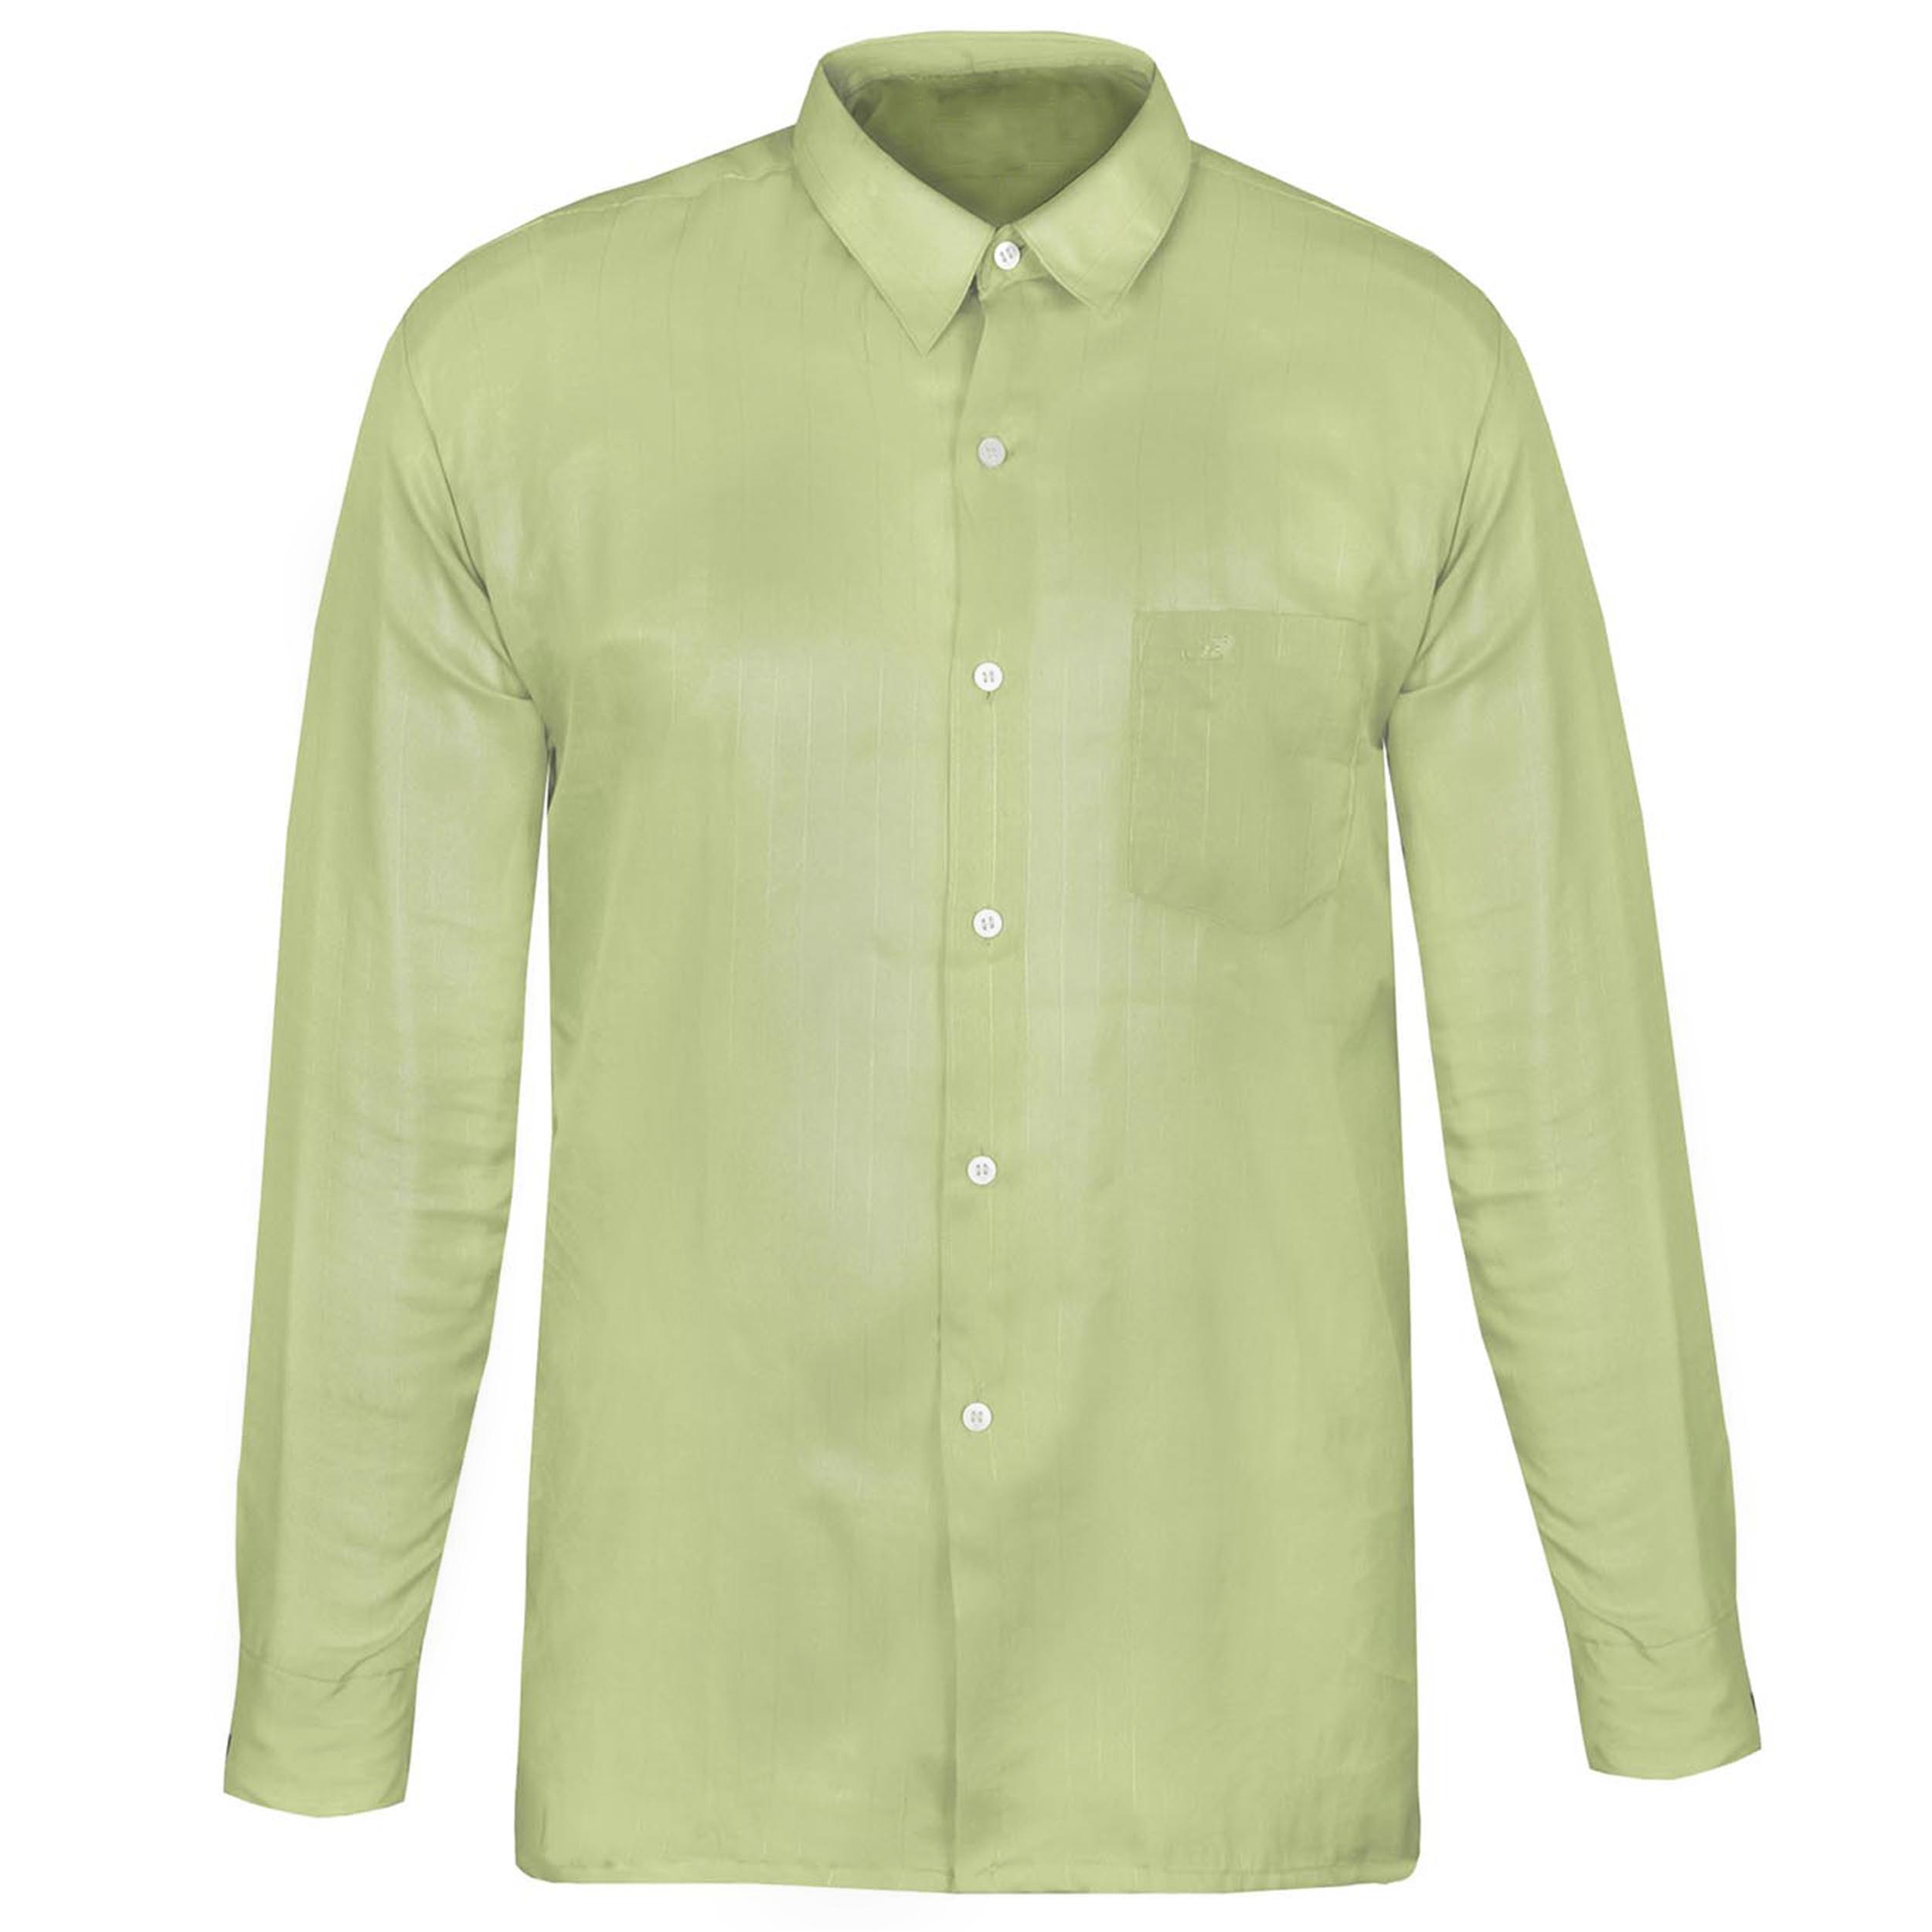 پیراهن مردانه کد PM007  رنگ سبز